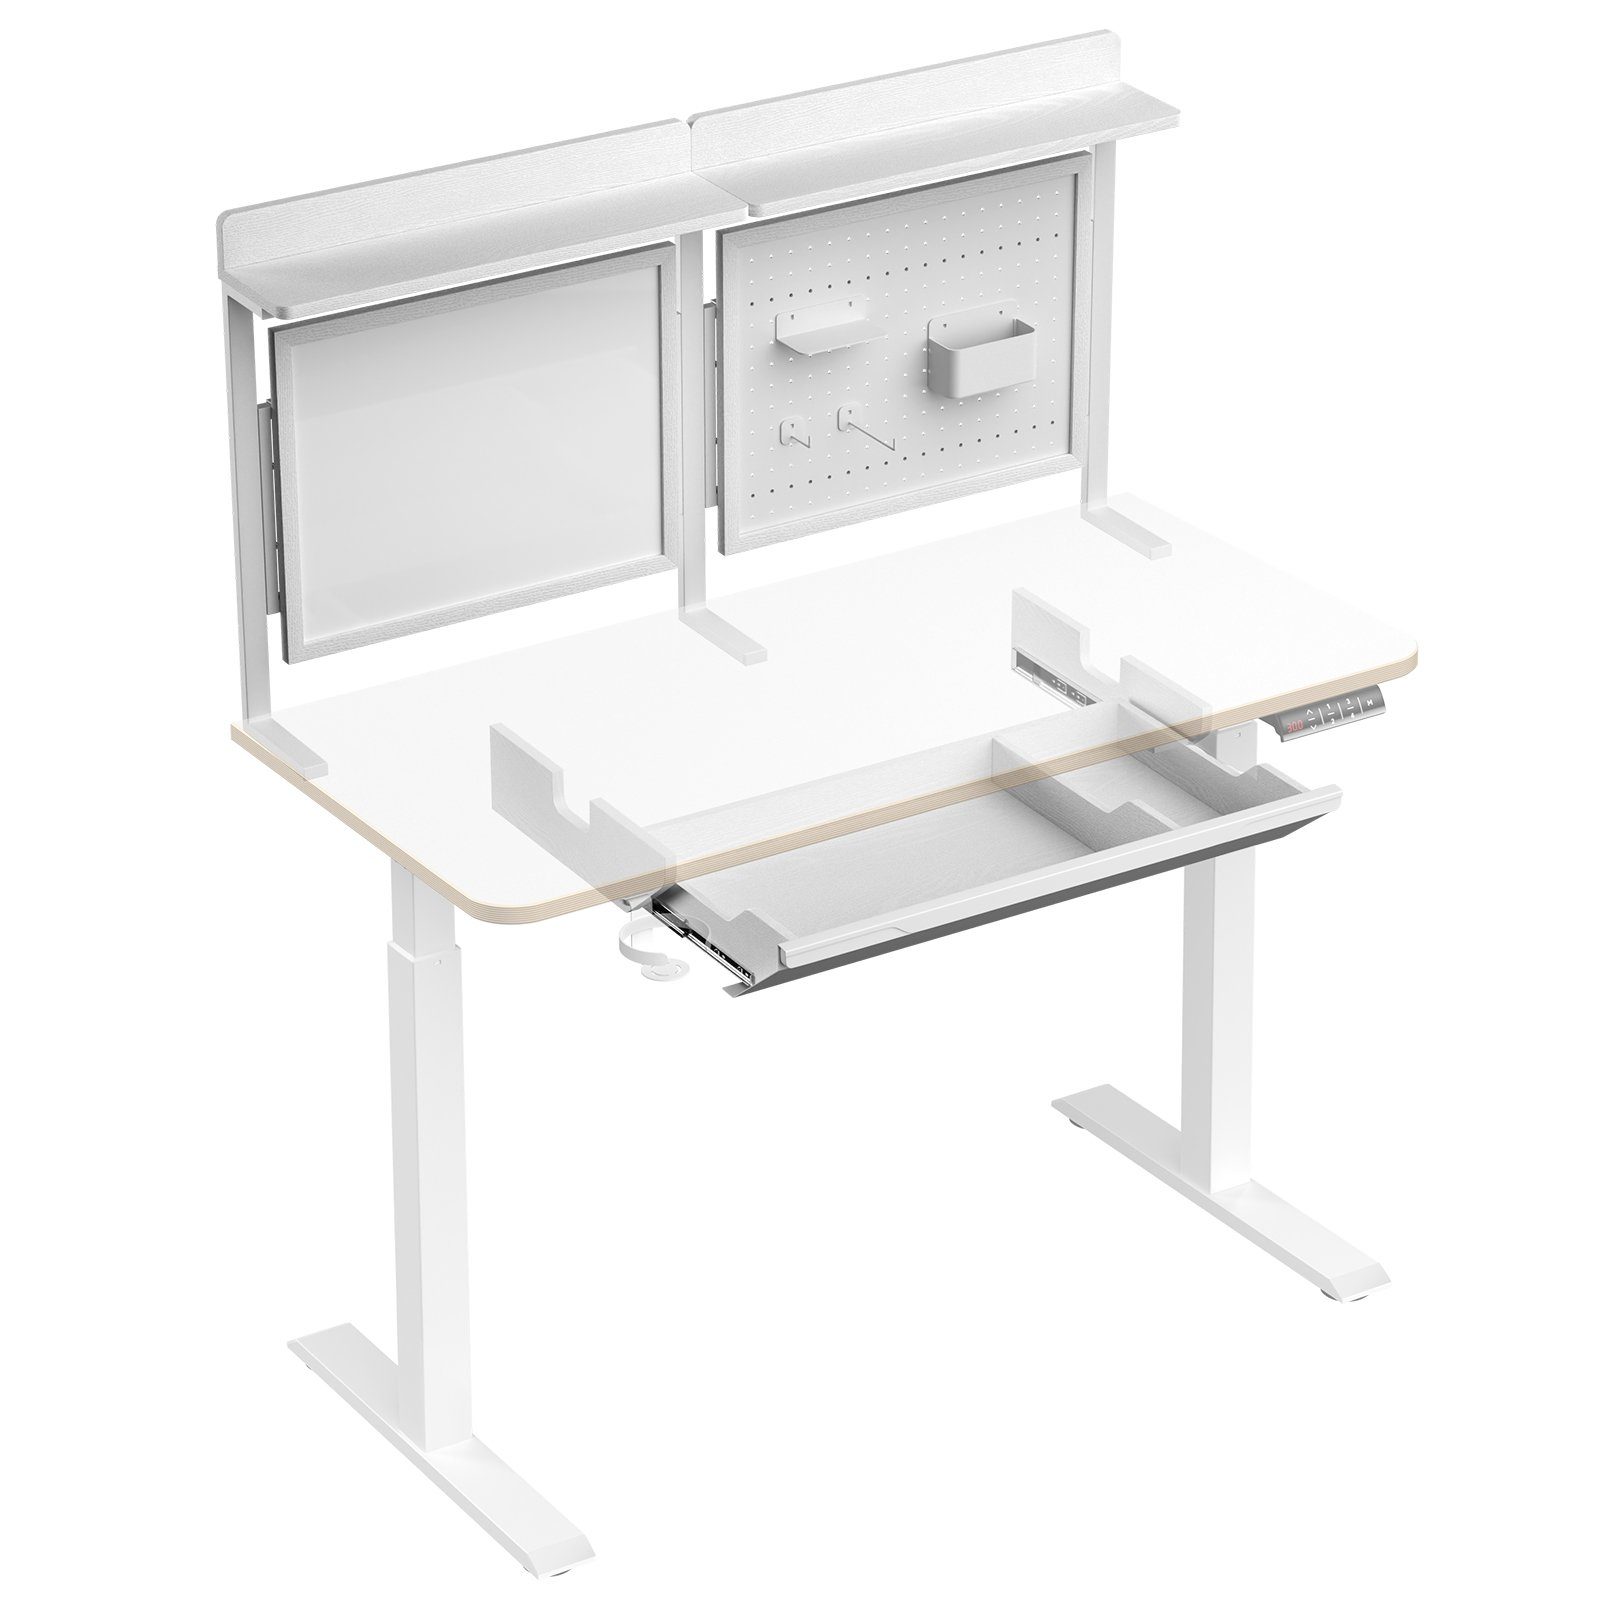 KOWO Schreibtisch Magnetisches Whiteboard, Lochplatte und Schublade für Schreibtisch, Passt nur für unseren Flexi Schreibtisch 120 cm